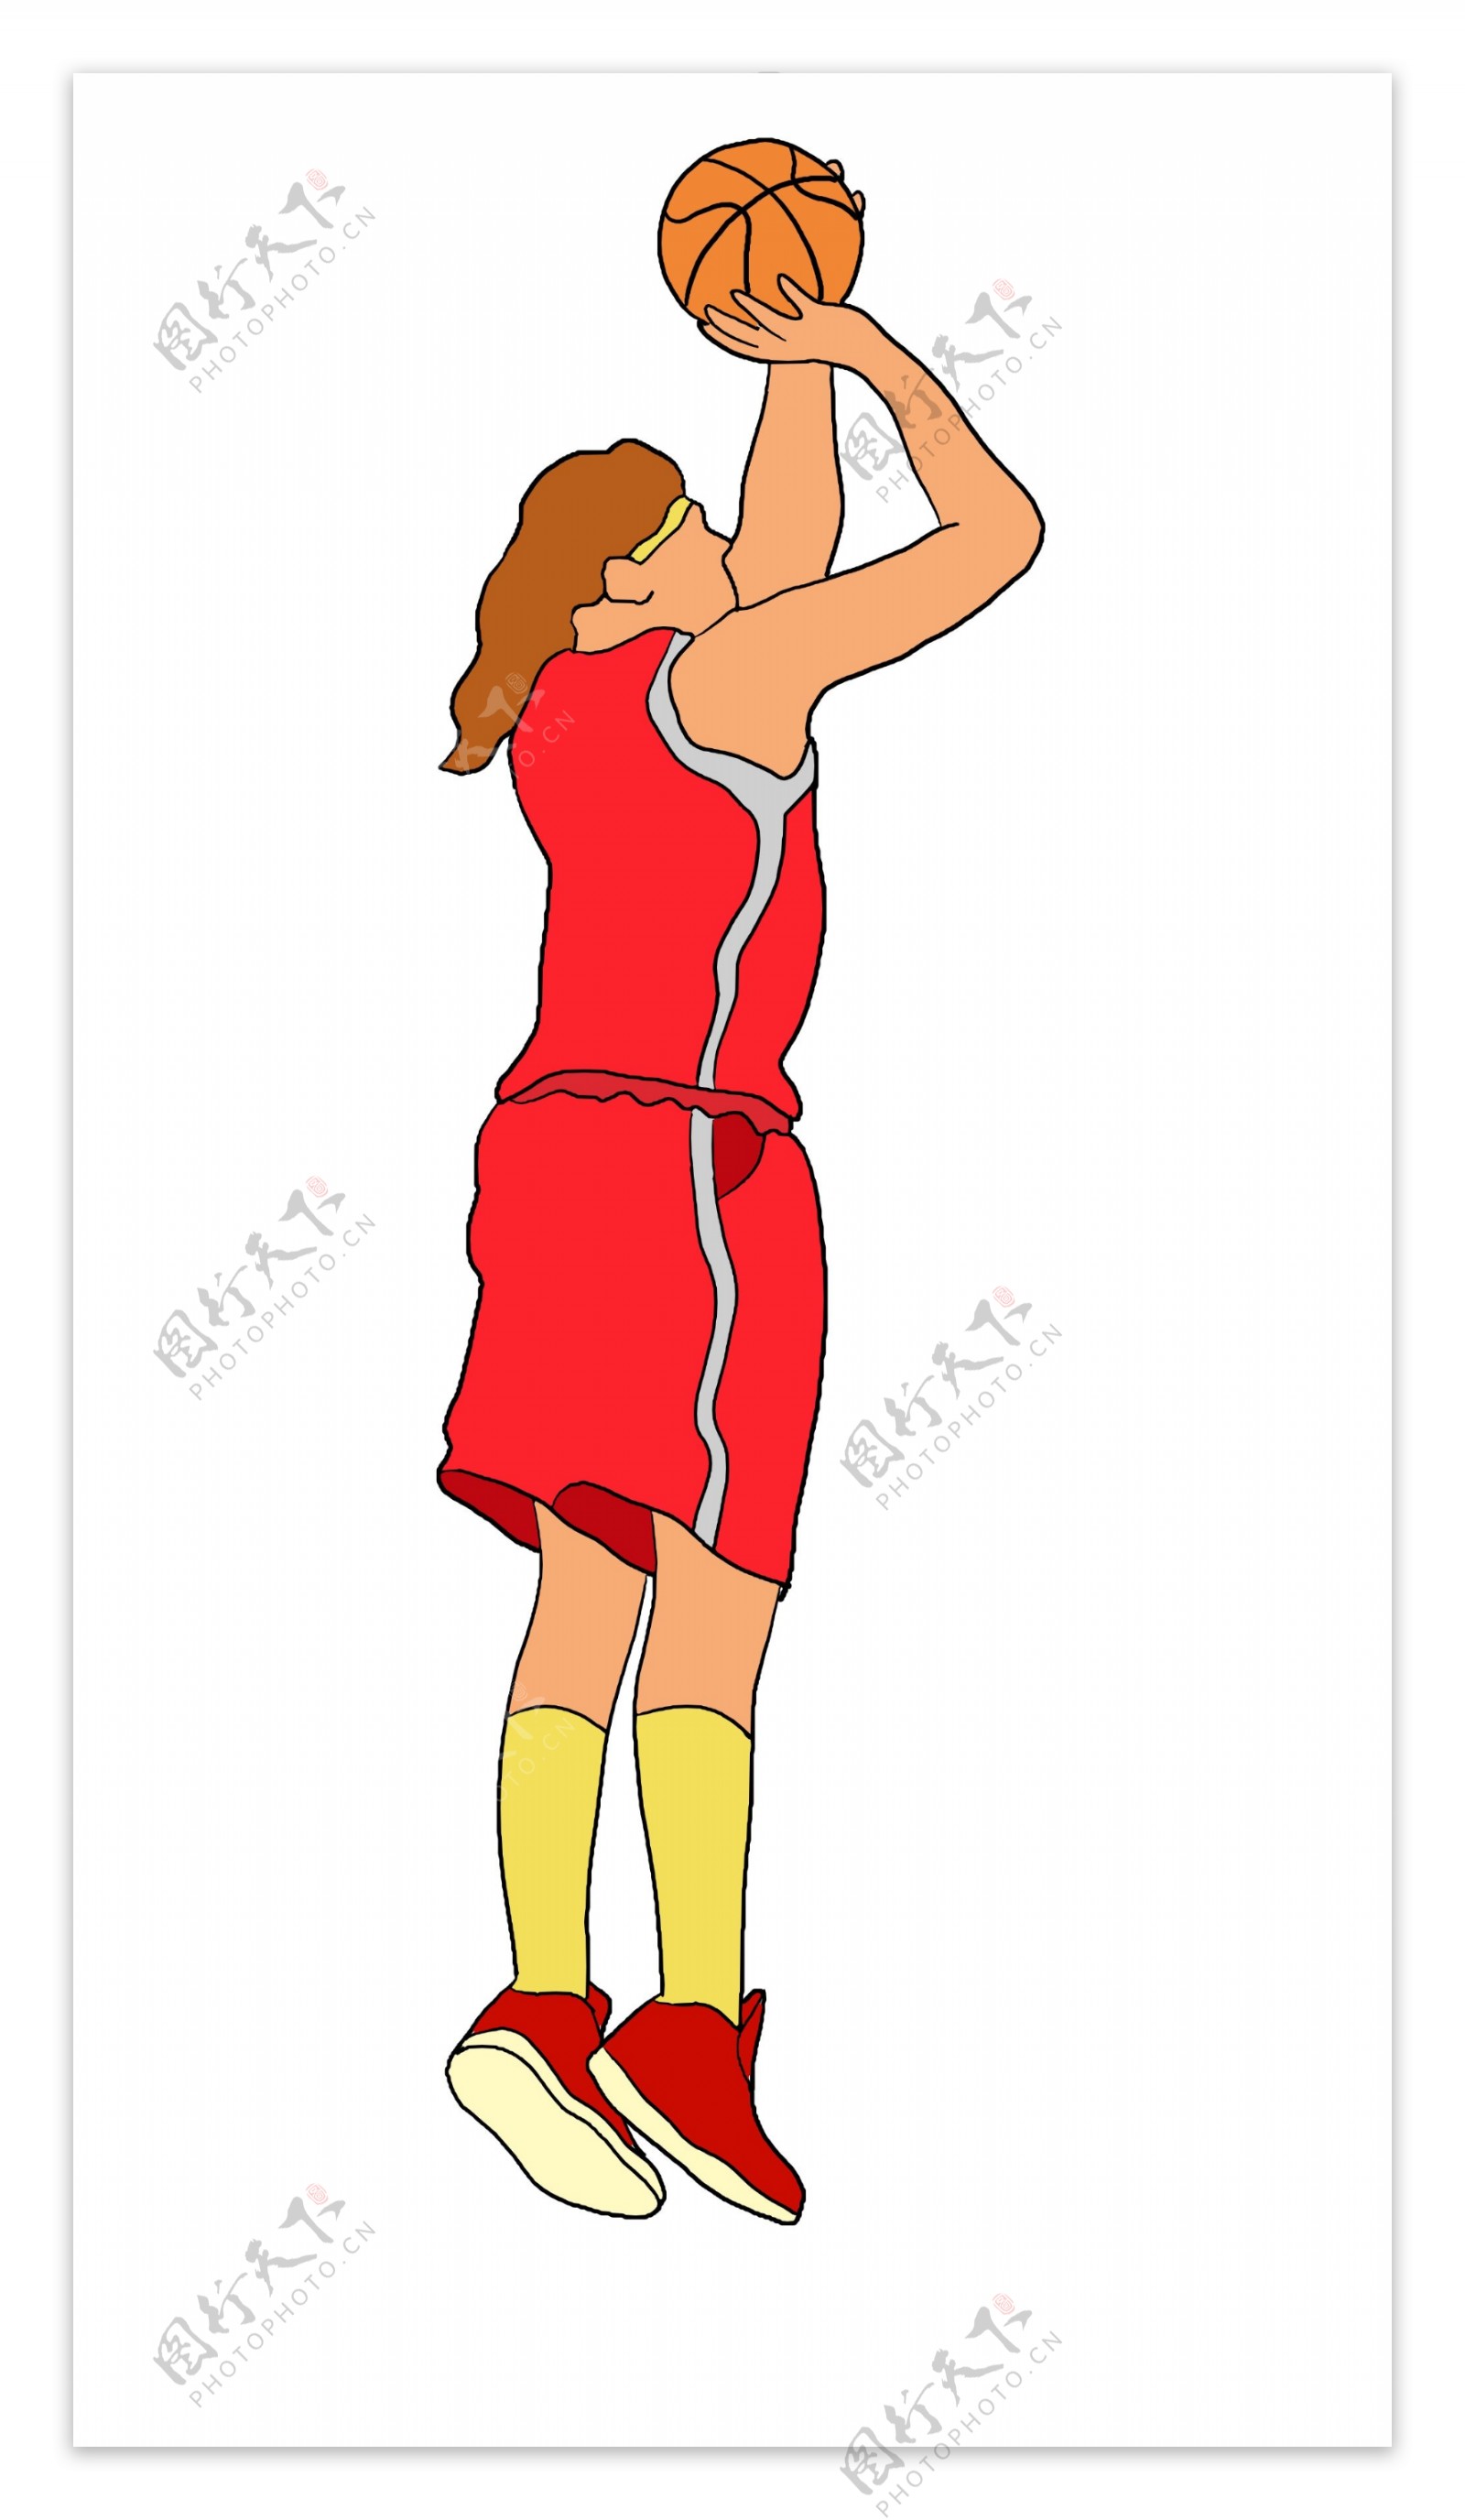 灌篮的篮球运动员插画